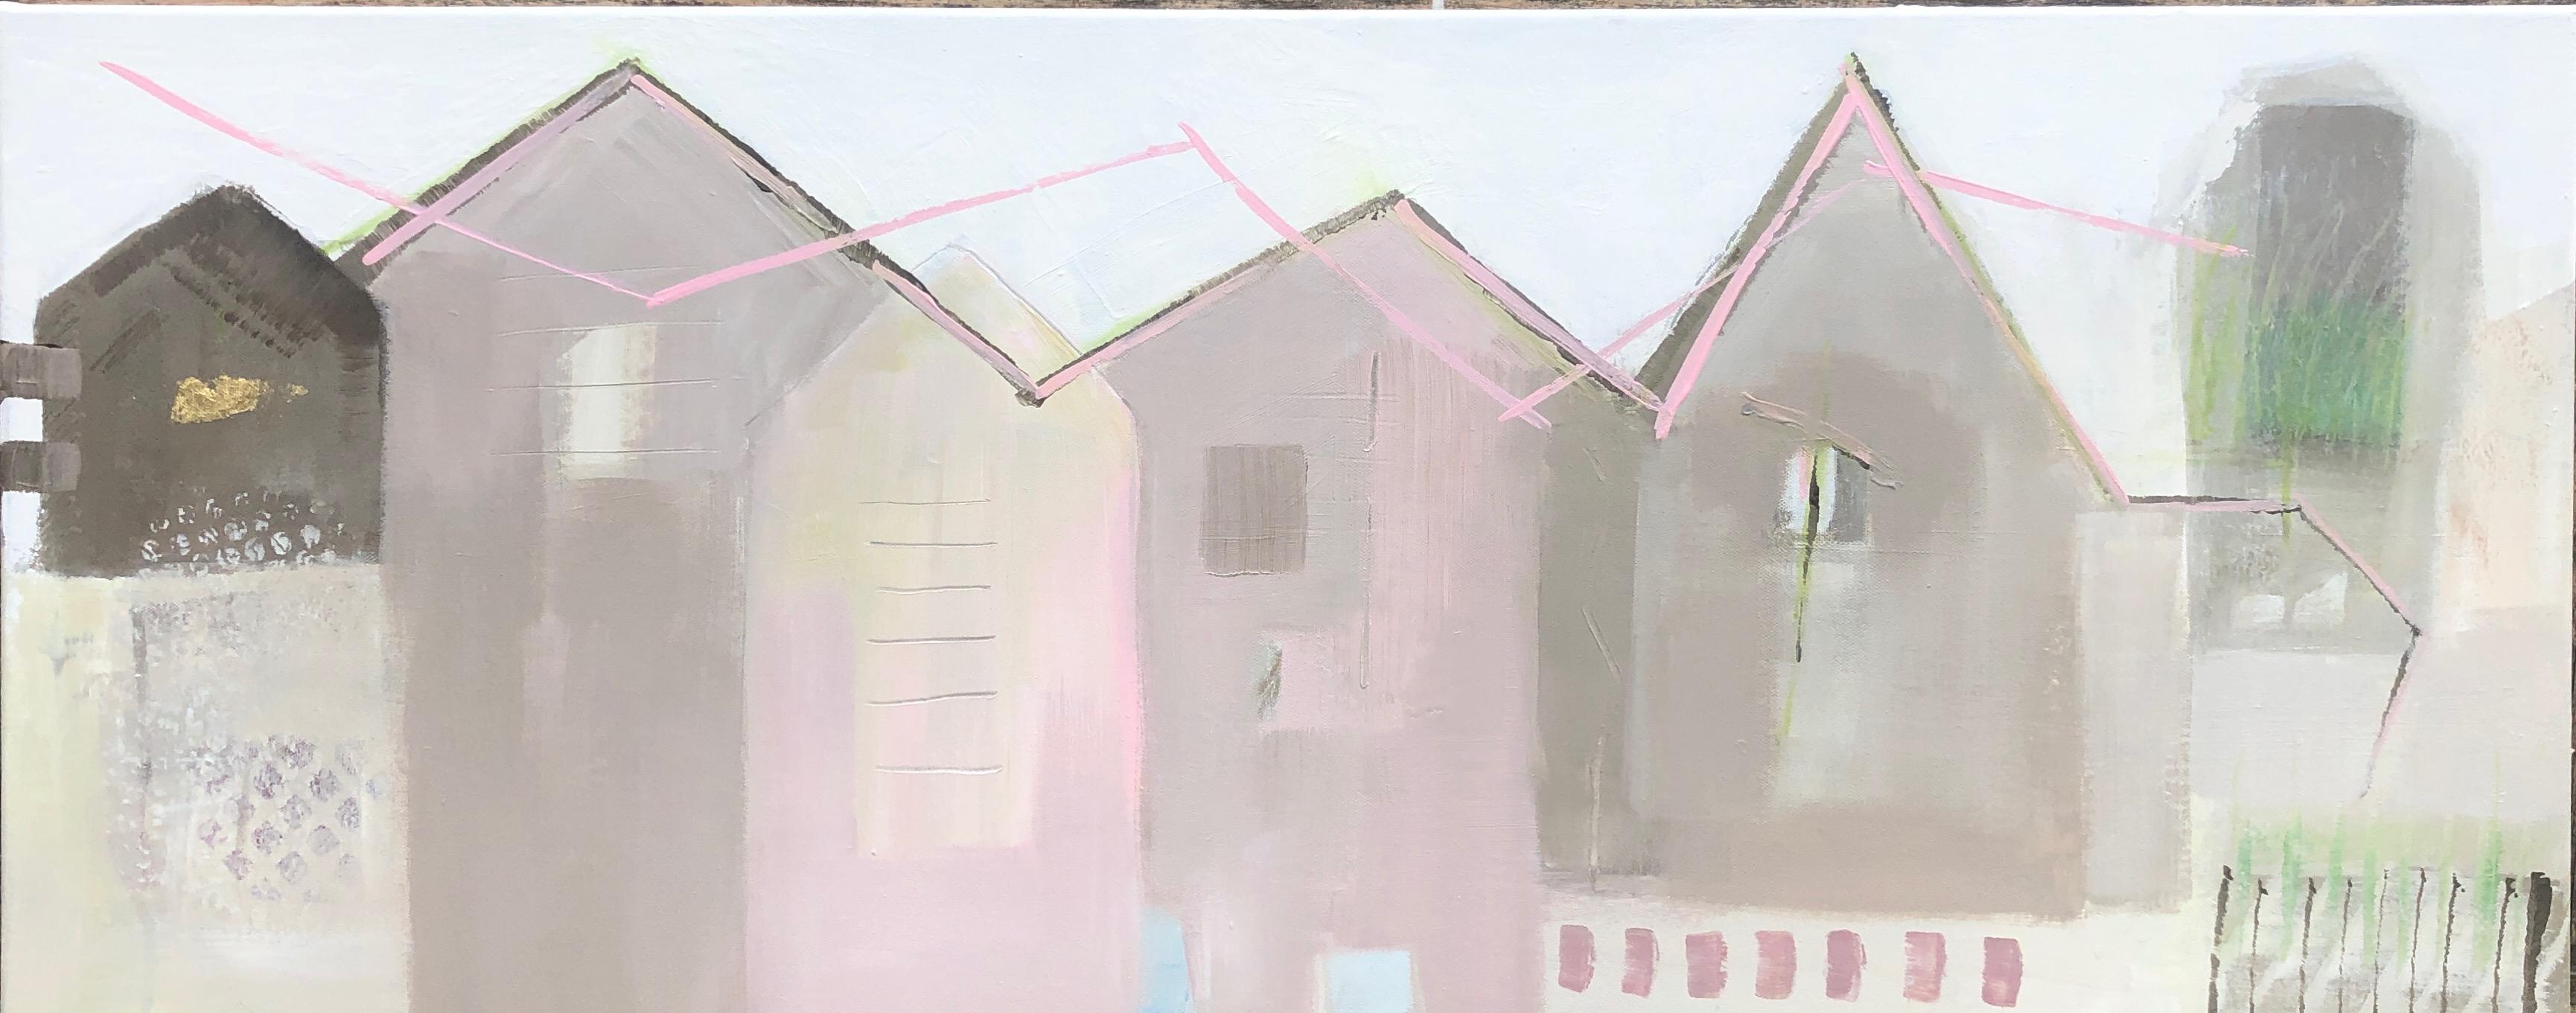 Maggie LaPorte Banks Abstract Painting – Bryggen Fassaden 4, Landschaft, kostspielig, abstrakt, städtisch, Architektur, Häuser 